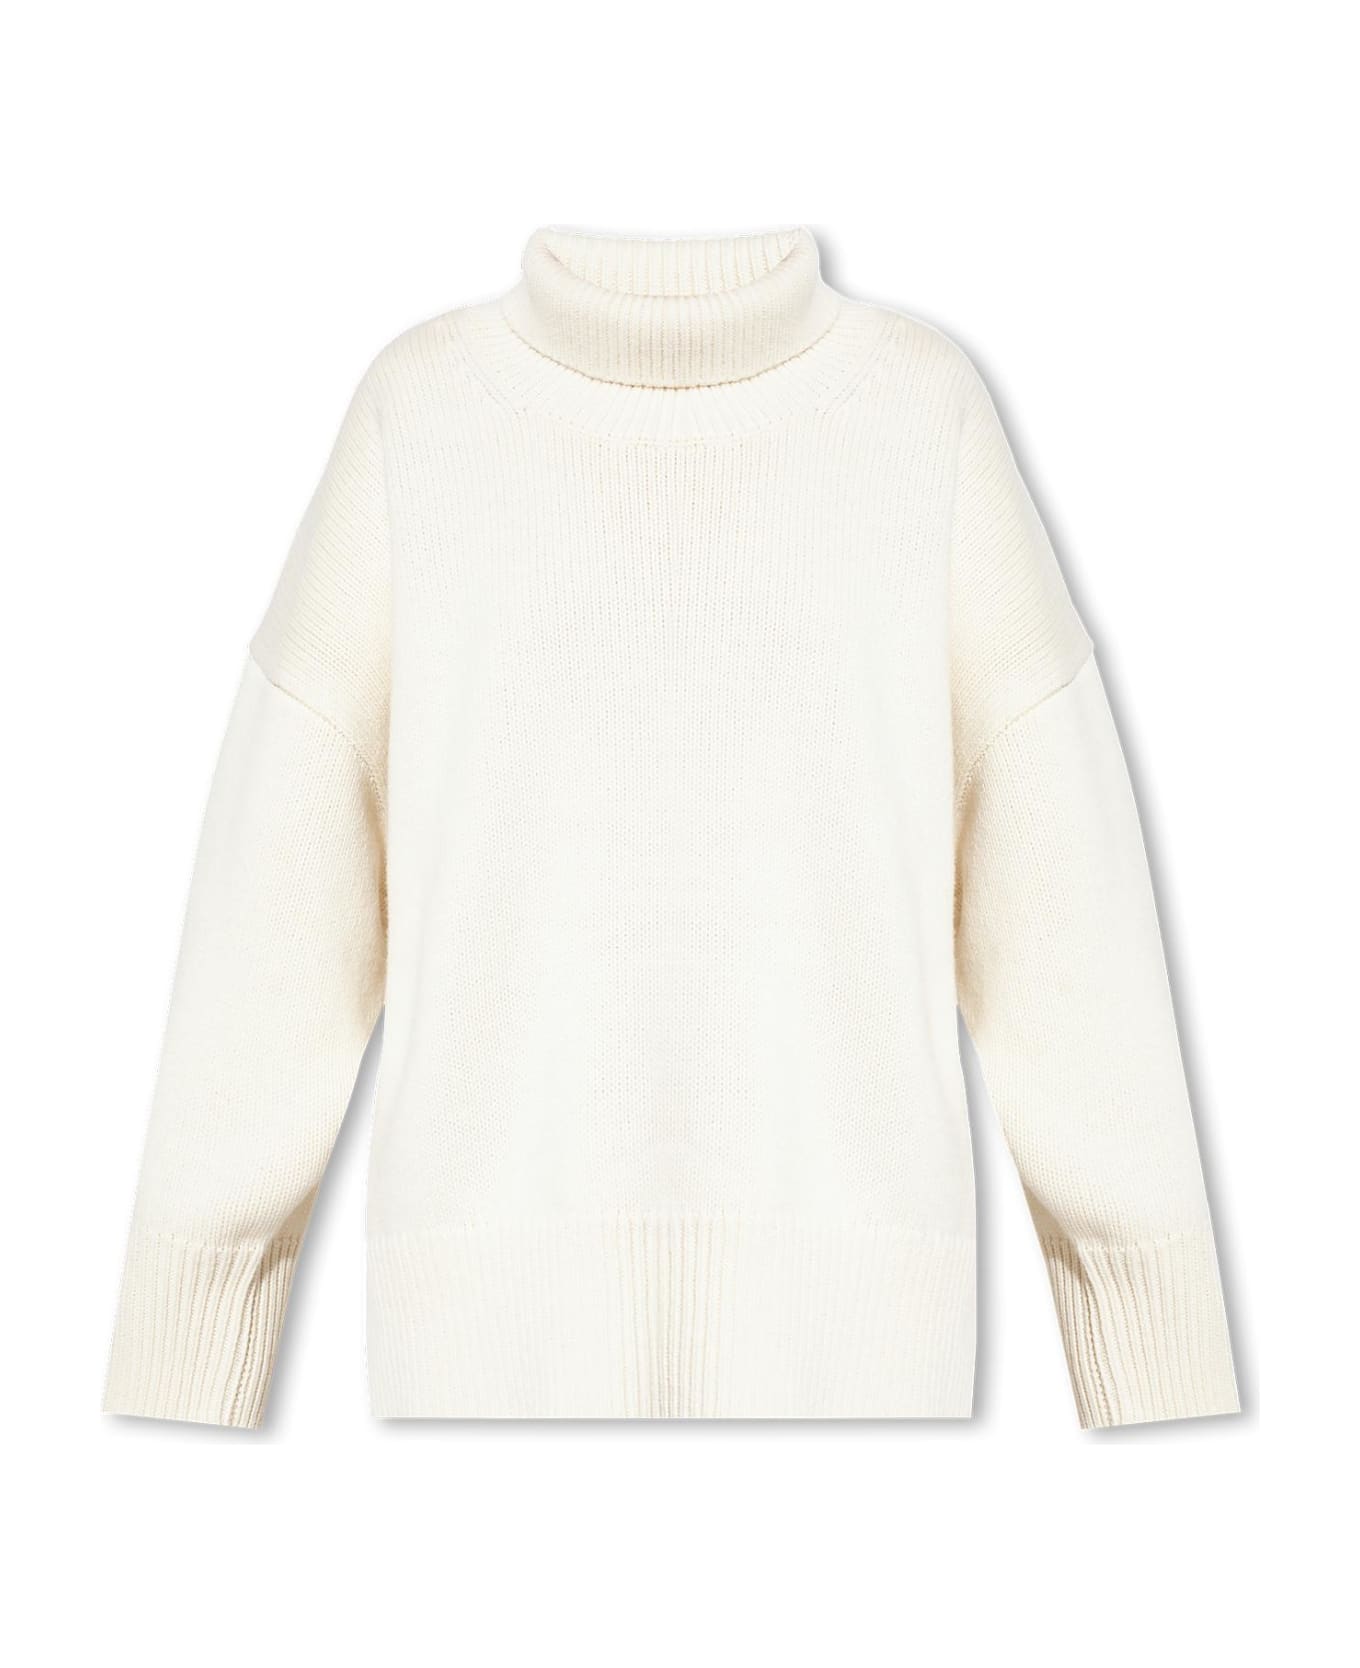 Chloé Wool Turtleneck Sweater - Beige